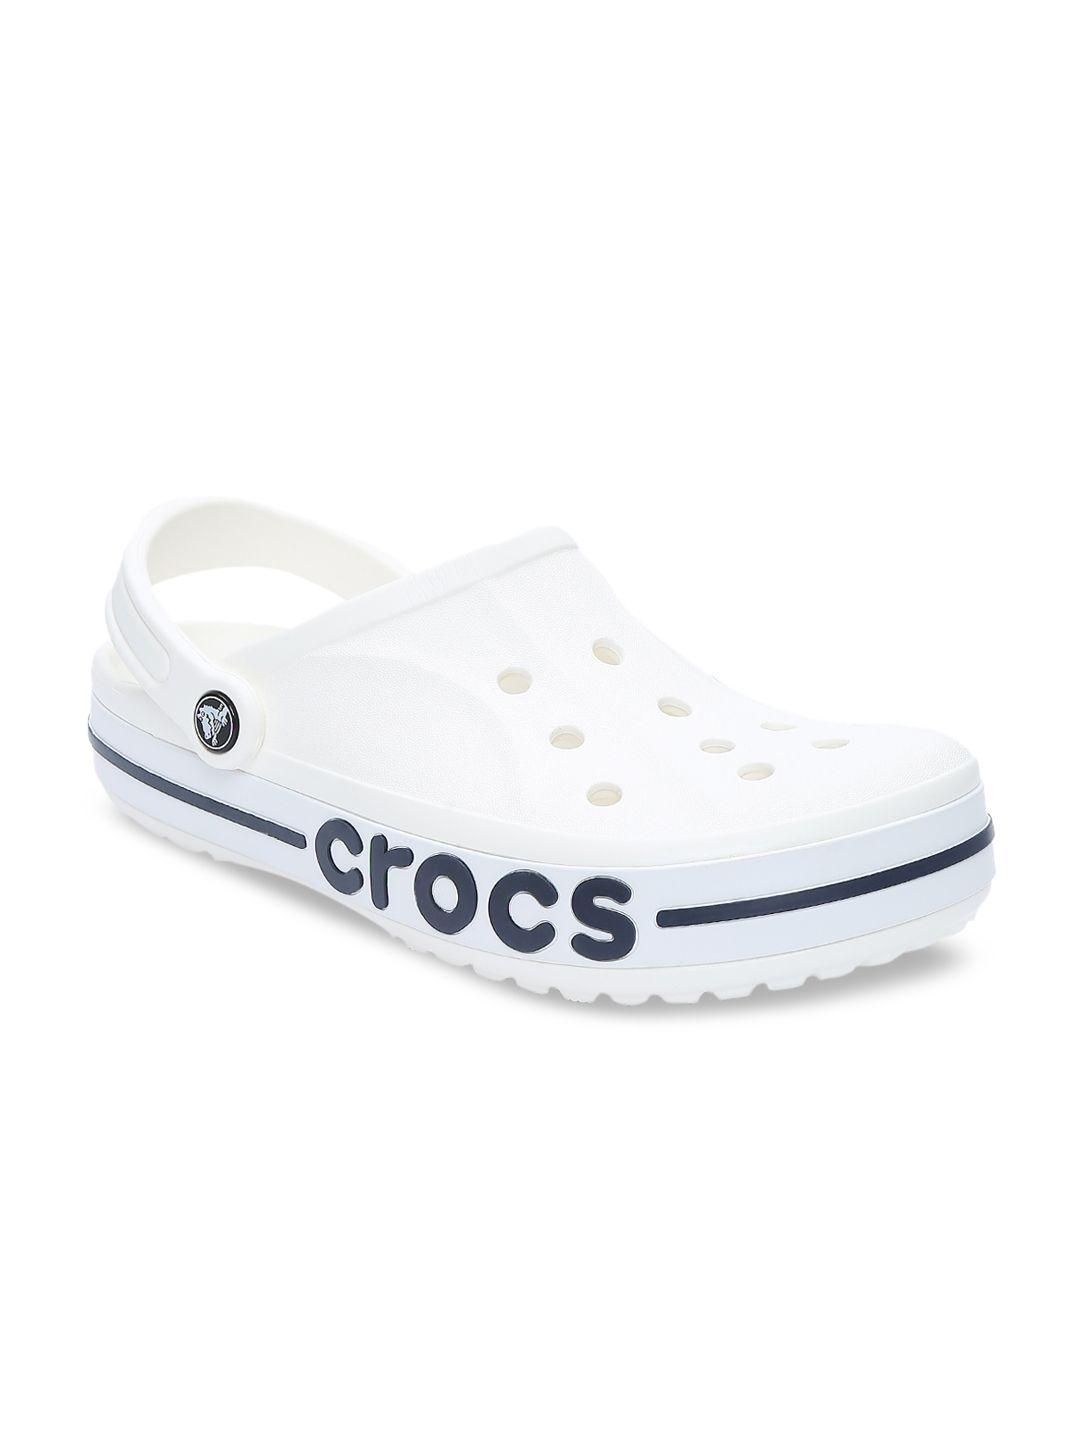 crocs unisex white & blue bayaband clogs